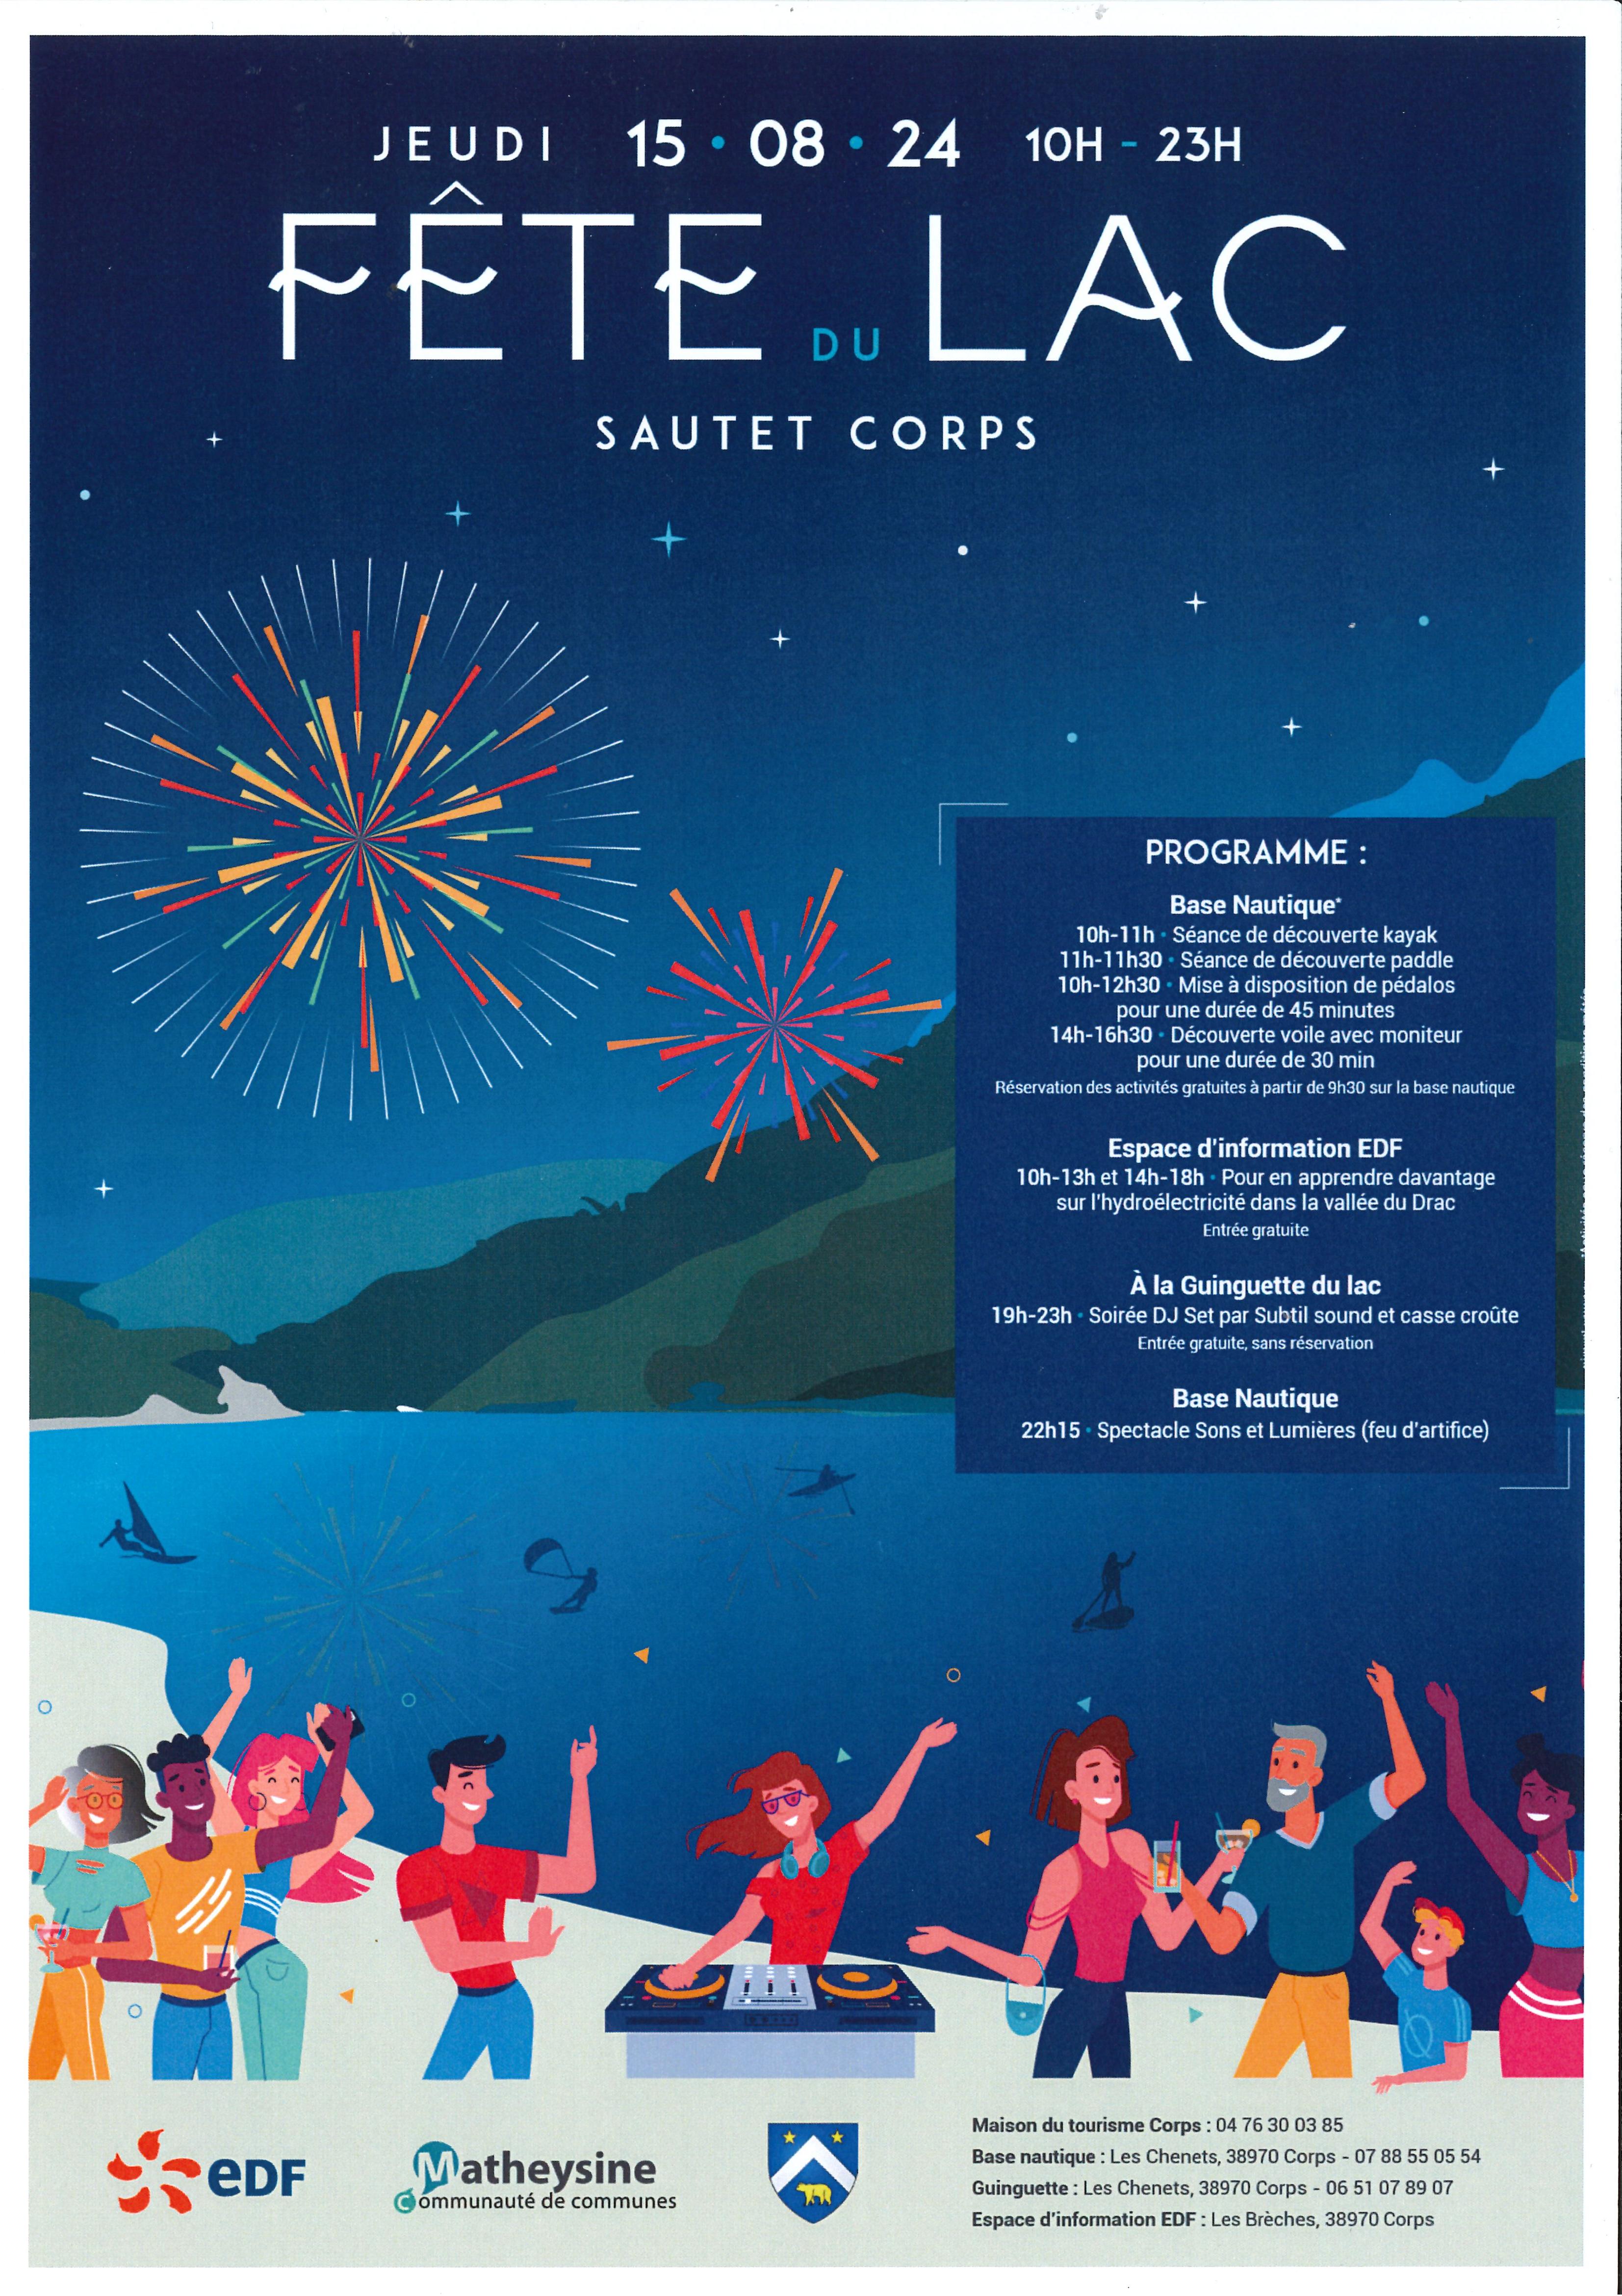 Affiche de la fête du lac du Sautet. On voit un lac en bleu, des personnes dansent au premier plan en bas de l'image et il y a des feux d'artifices dans le ciel étoilé.